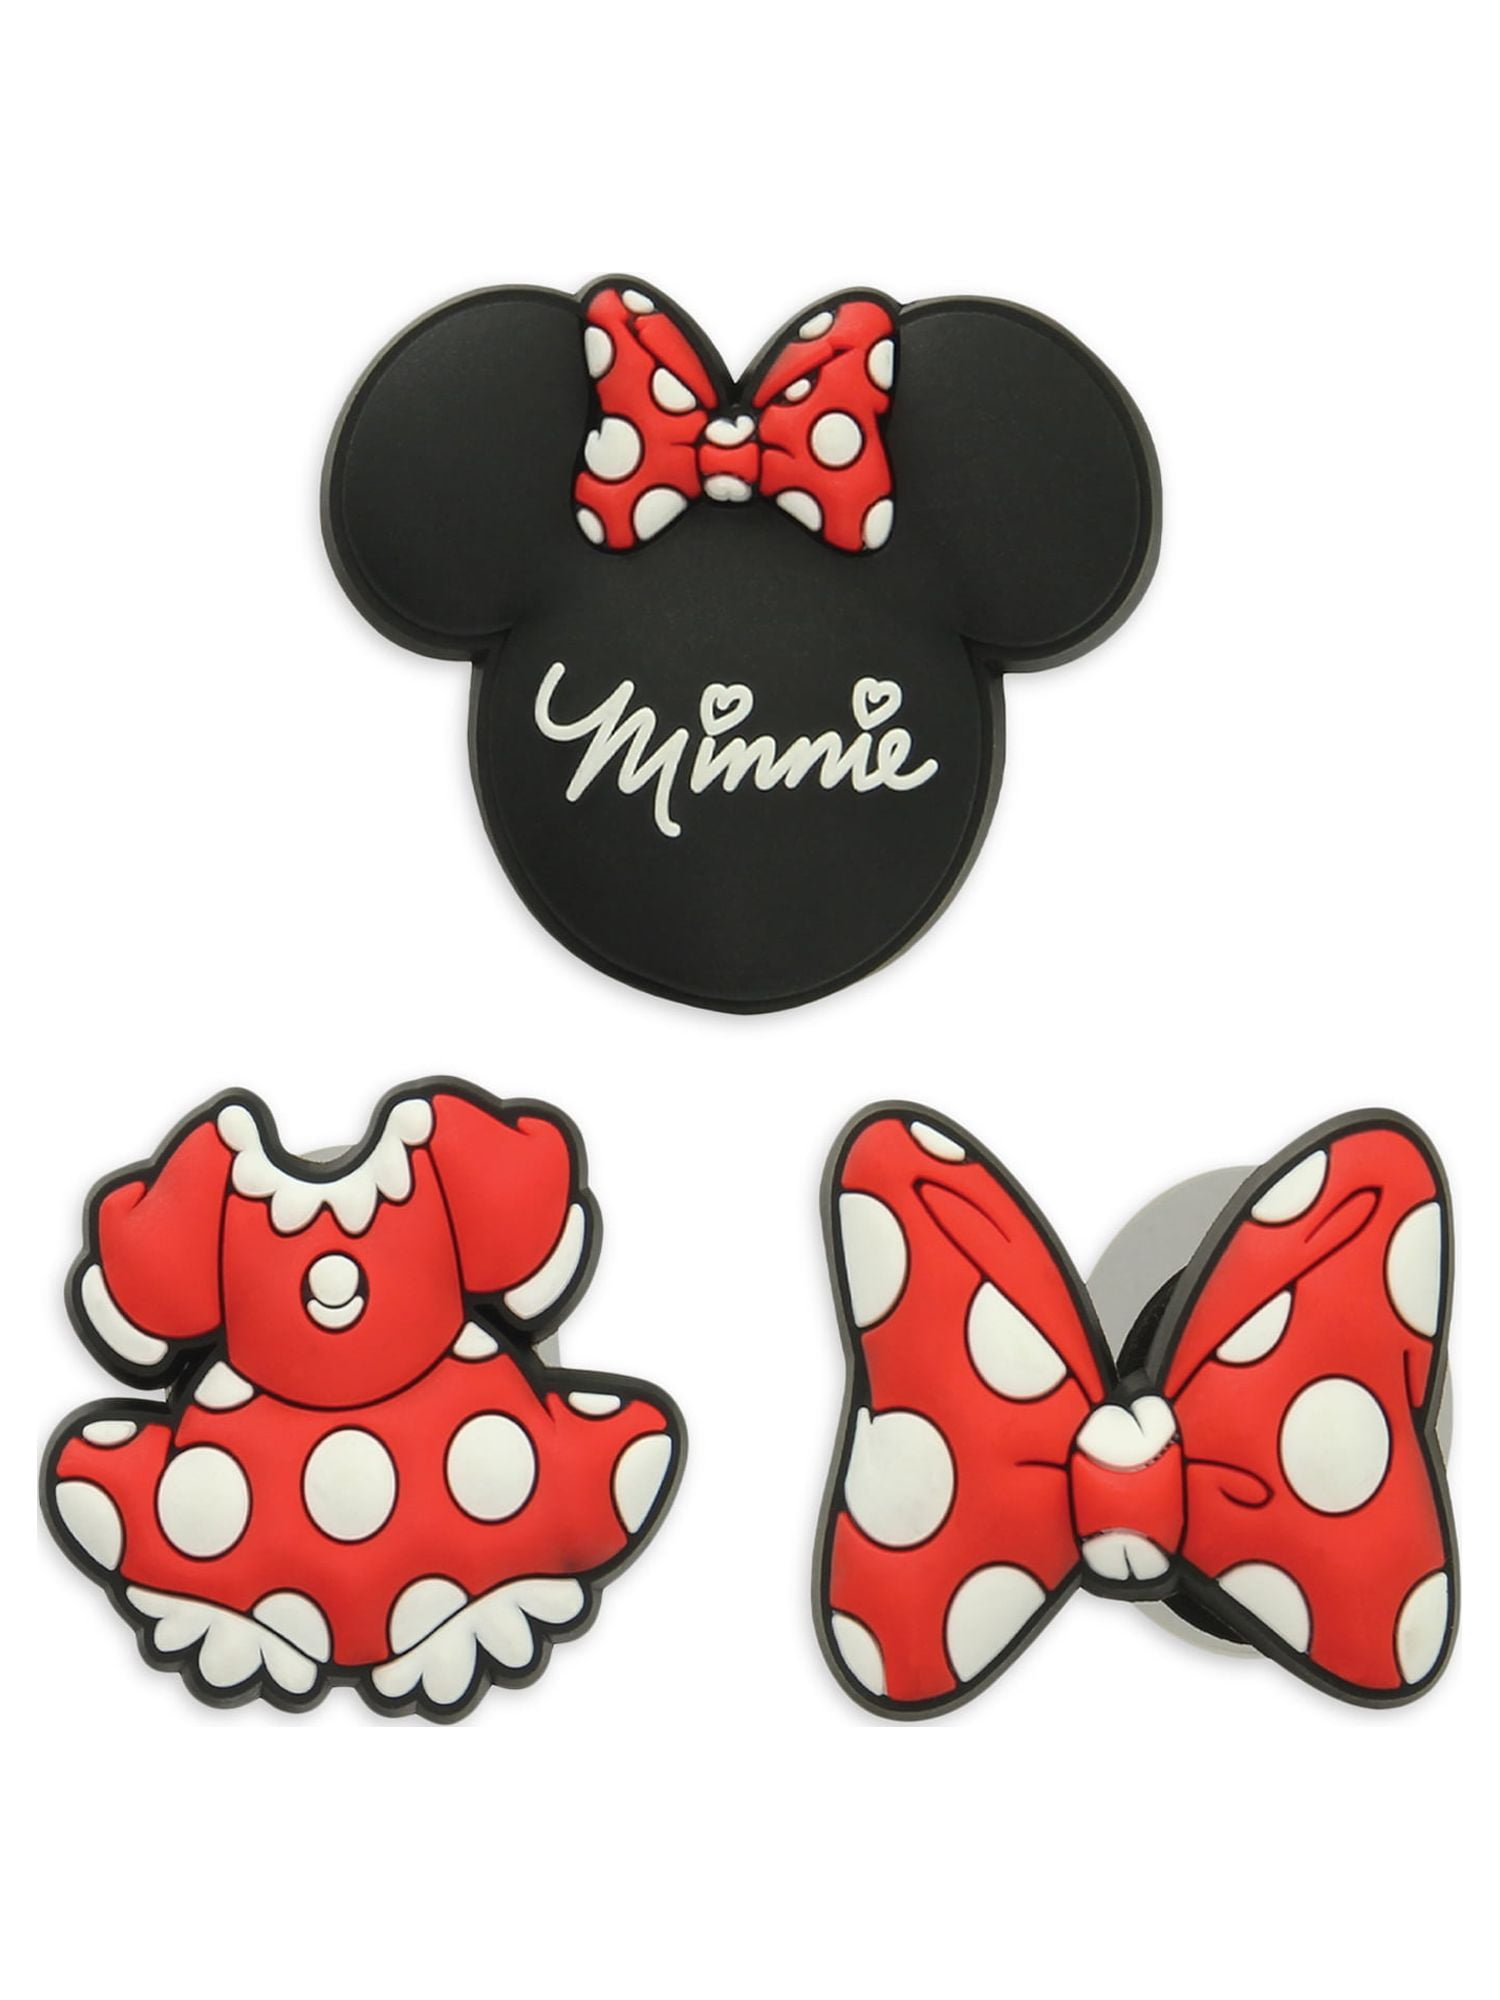  Minnie Mouse Jibbitz